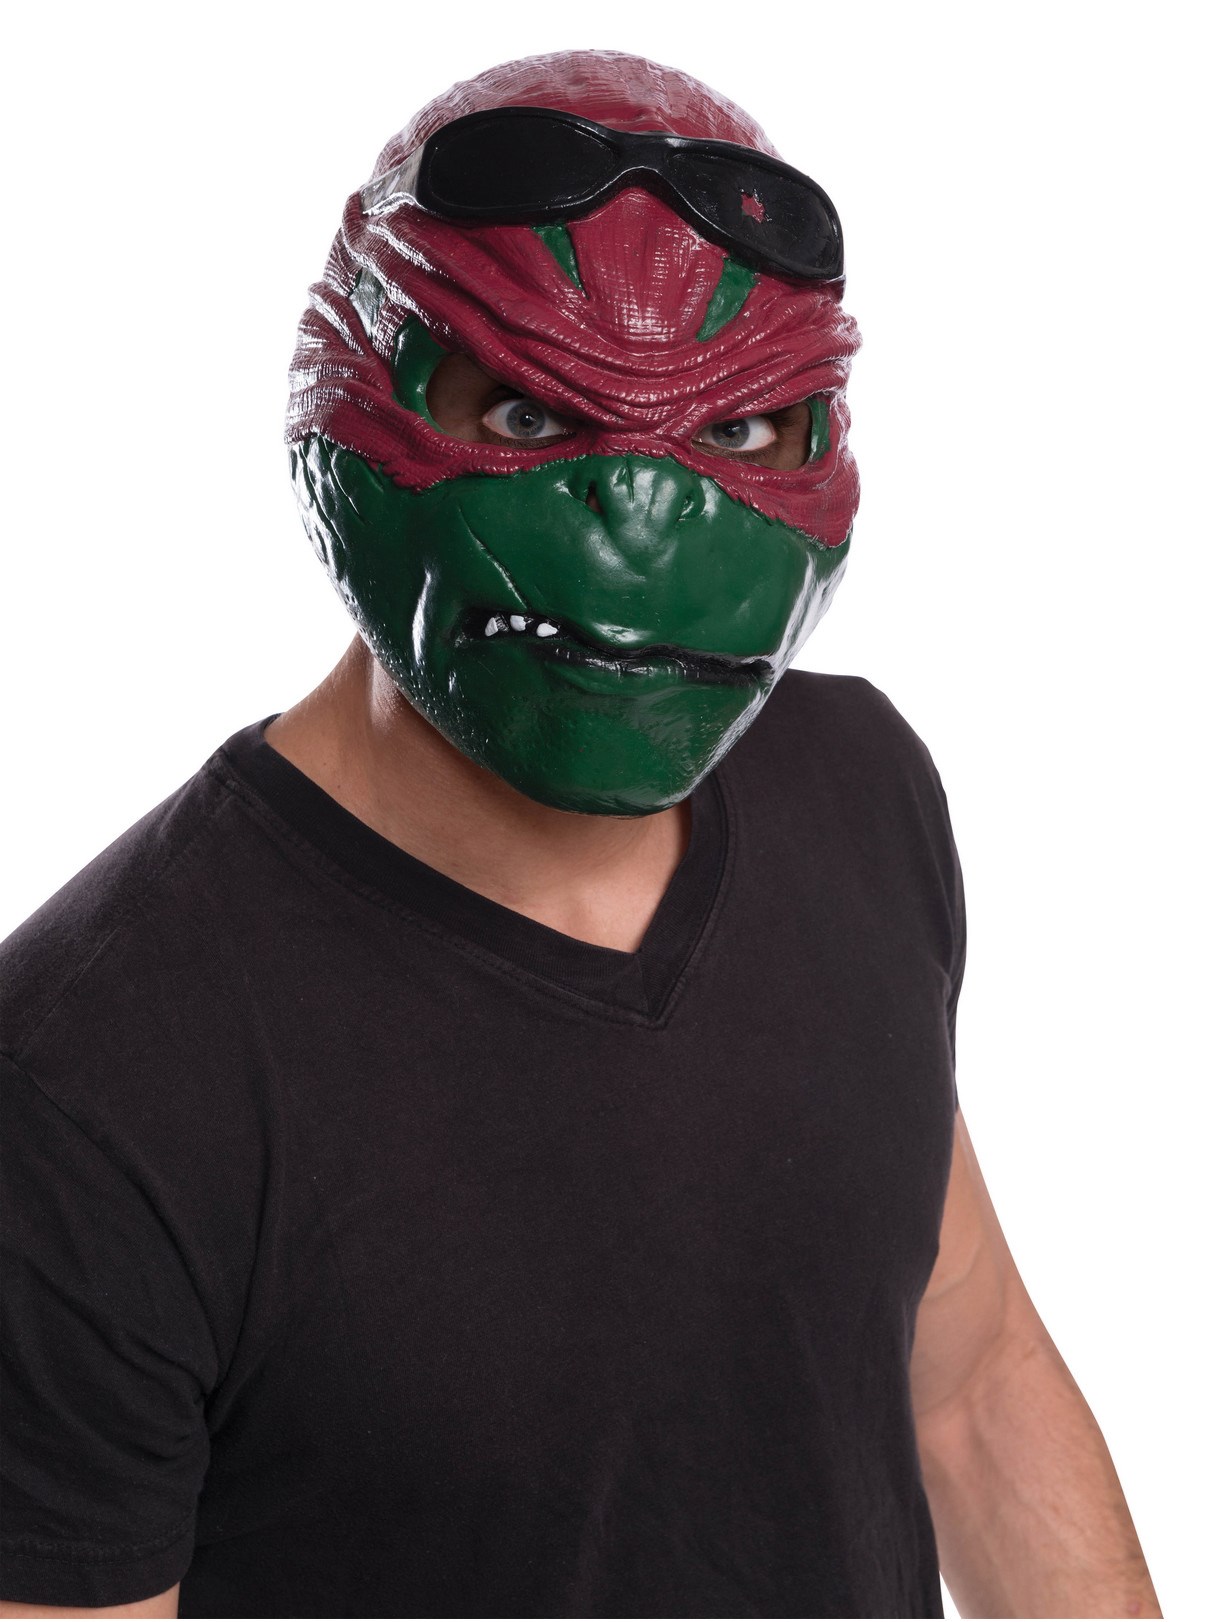 Teenage Mutant Ninja Turtle Raphael Adult Mask